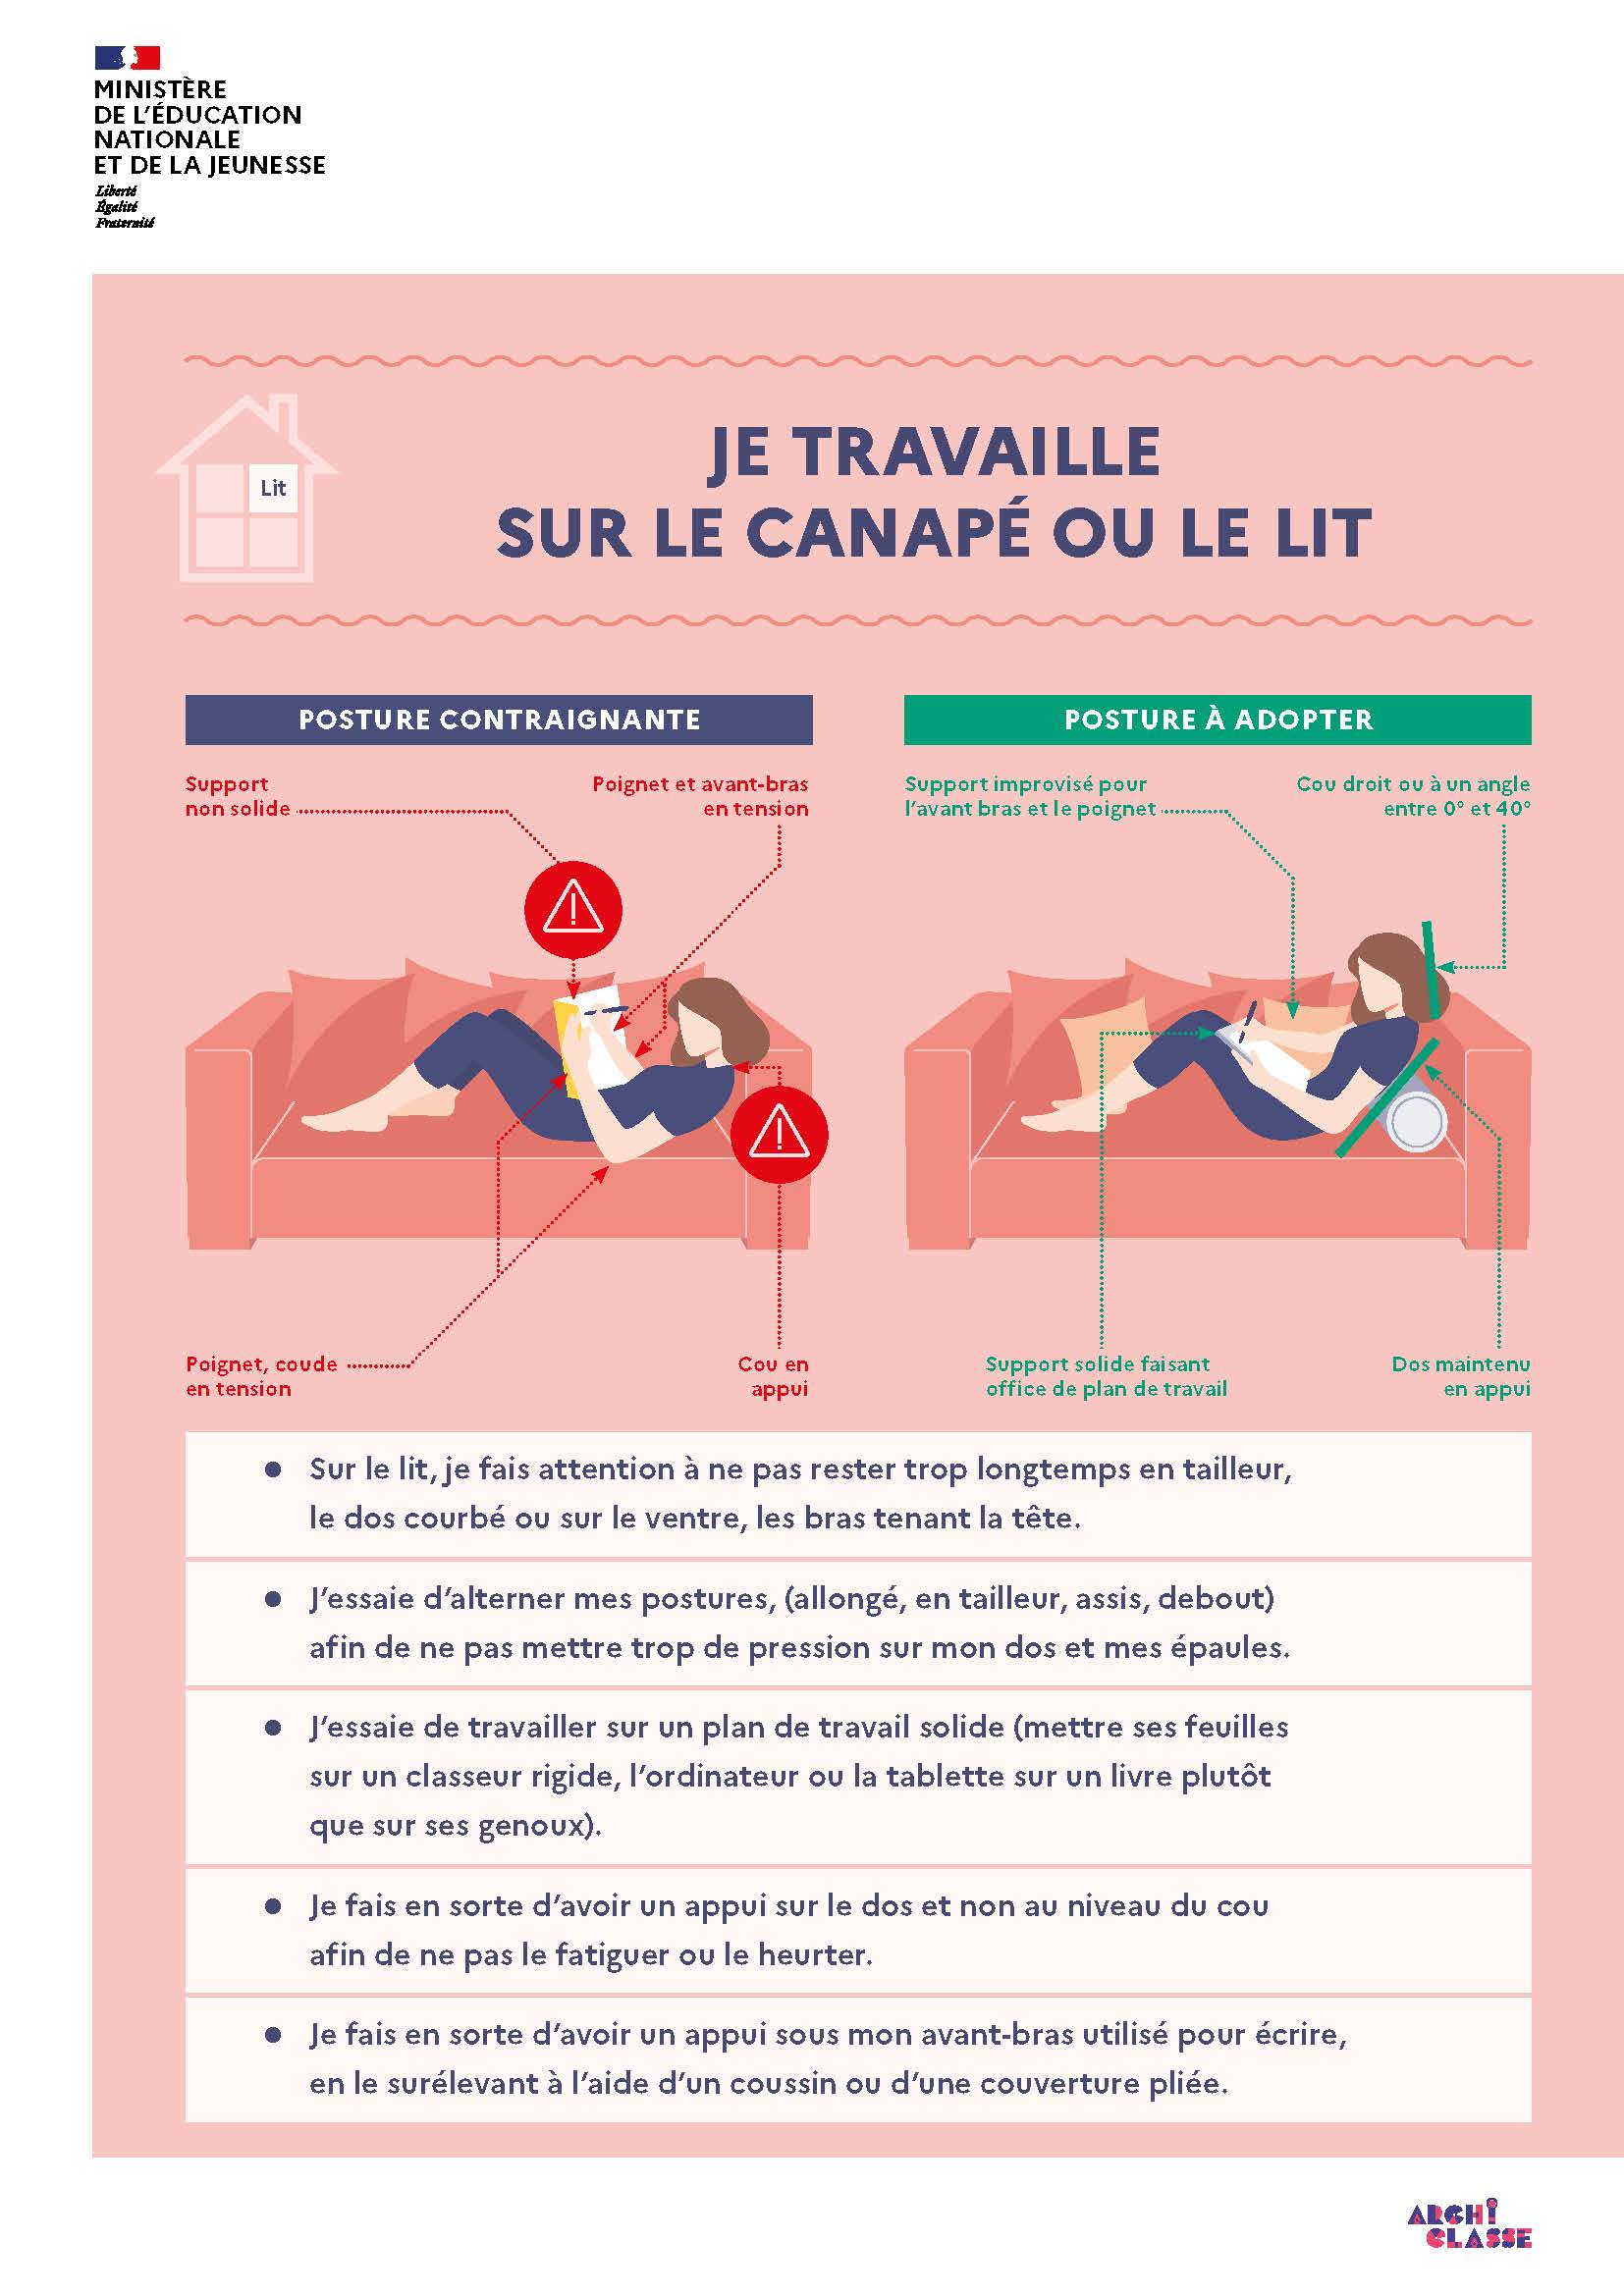 Infographie "JE TRAVAILLE SUR LE CANAPÉ OU LE LIT"